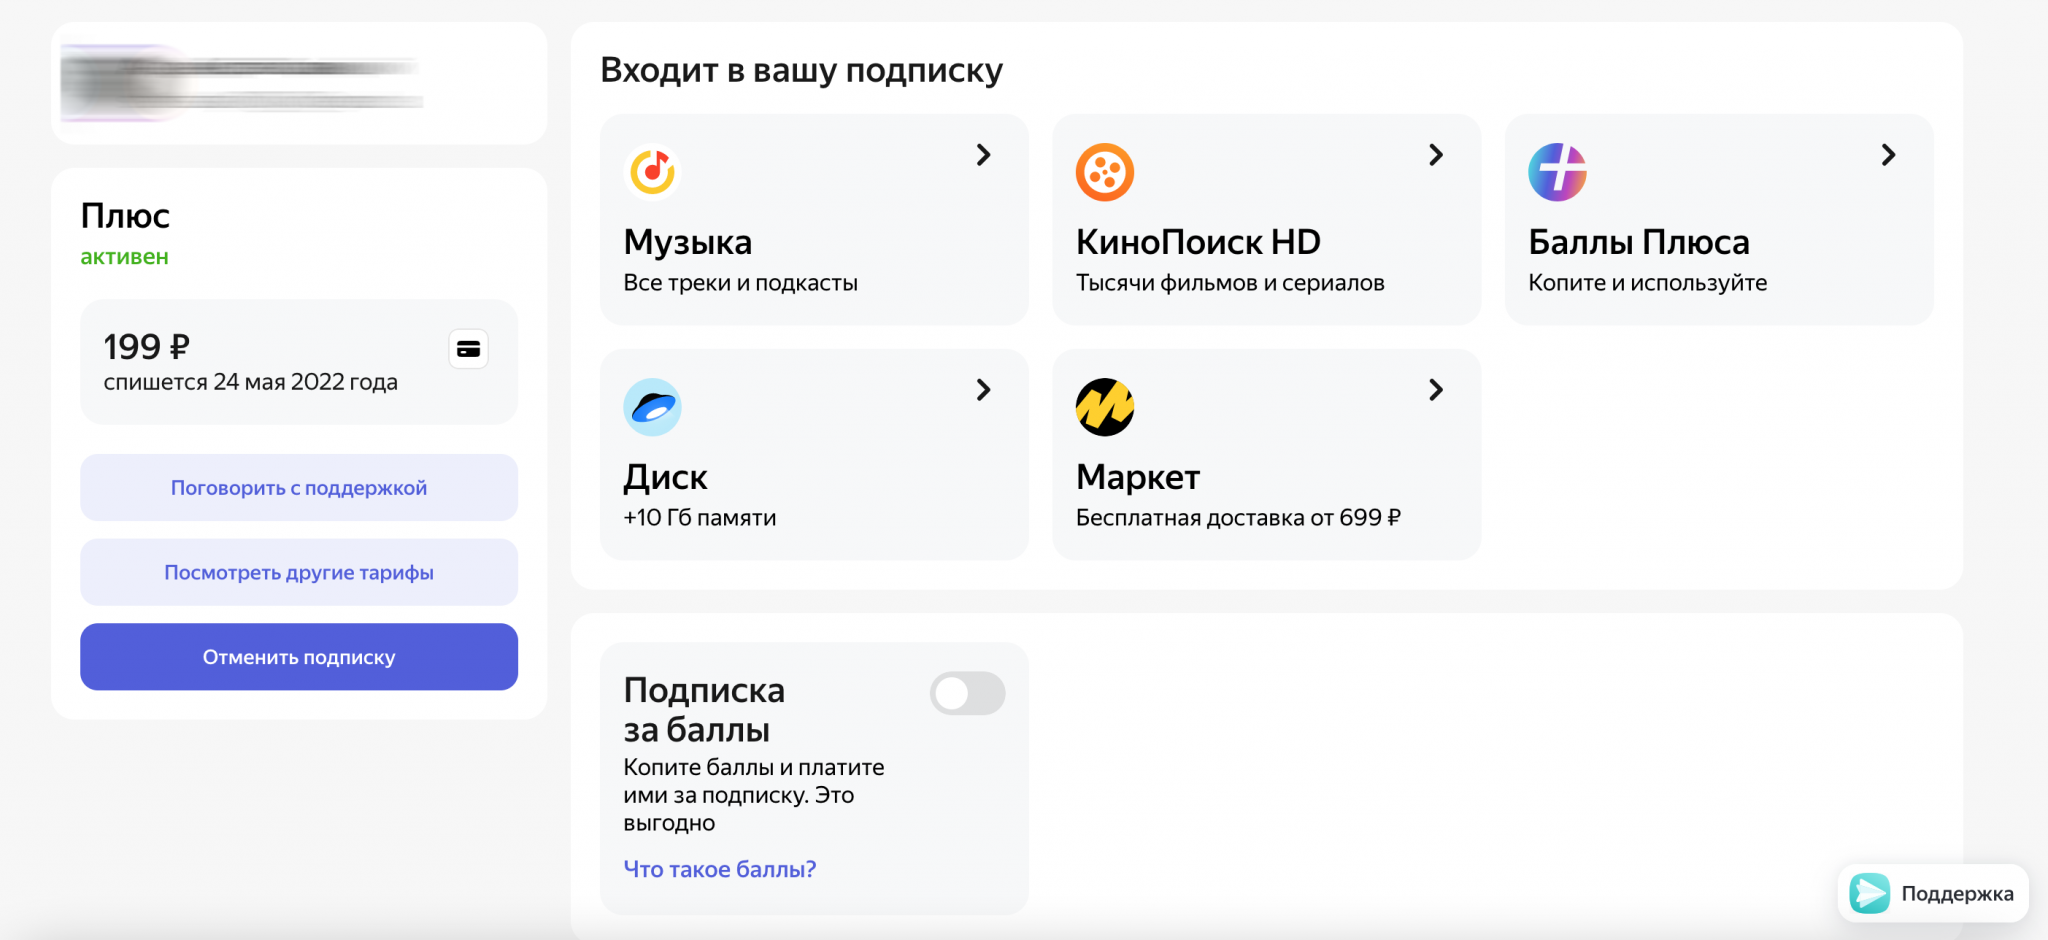 Яндекс плюс — что это такое и как подключить бесплатно. что такое яндекс плюс подписка, плюсы и минусы сервиса